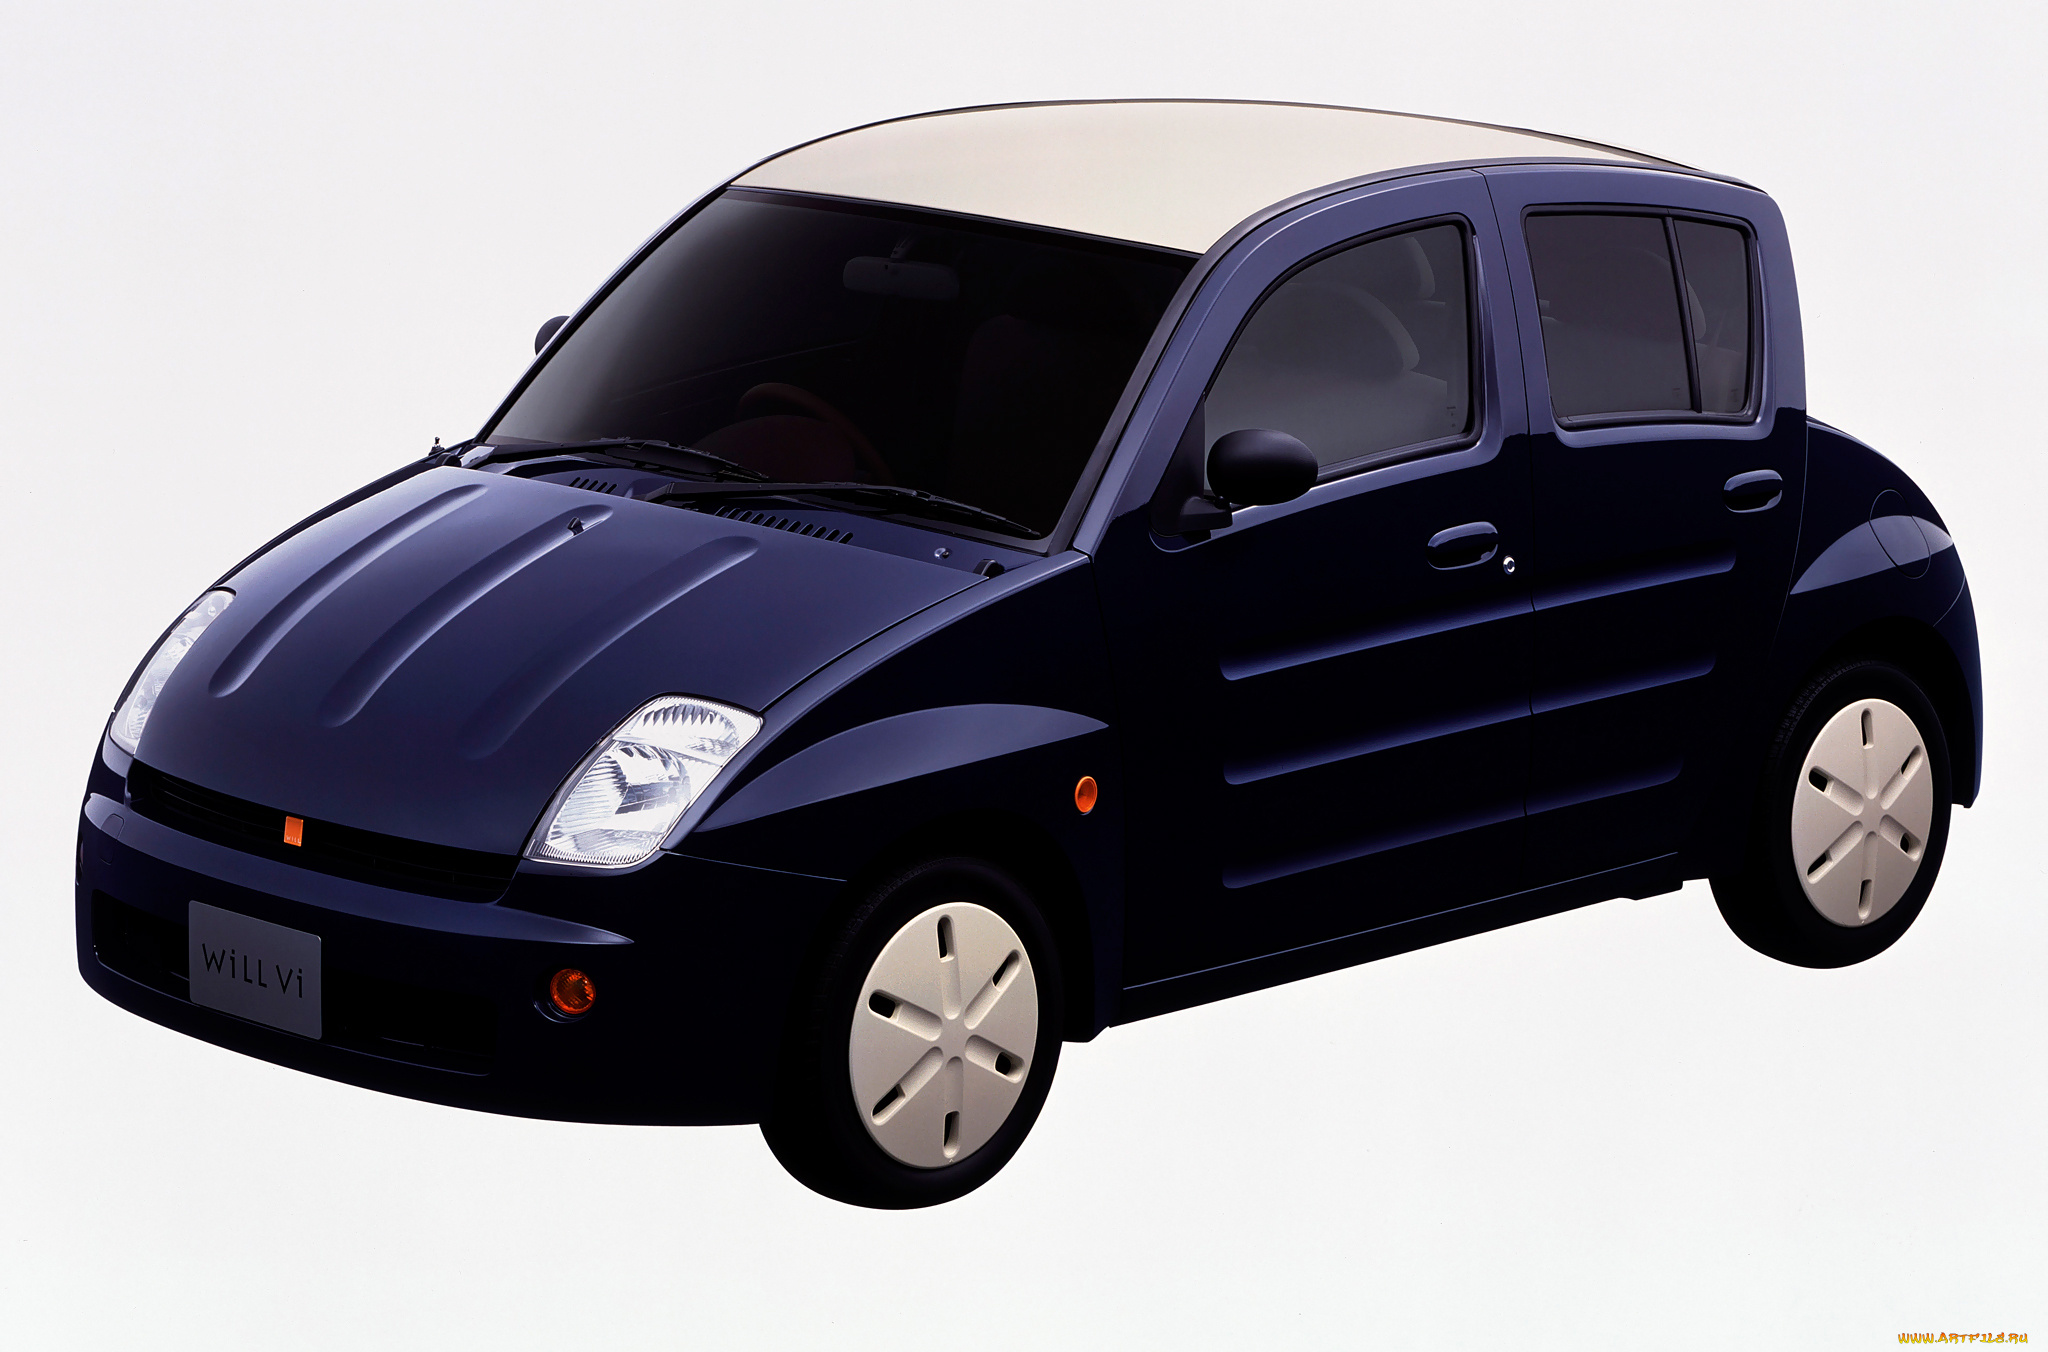 toyota, will-vi, 2000, автомобили, toyota, 2000, will-vi